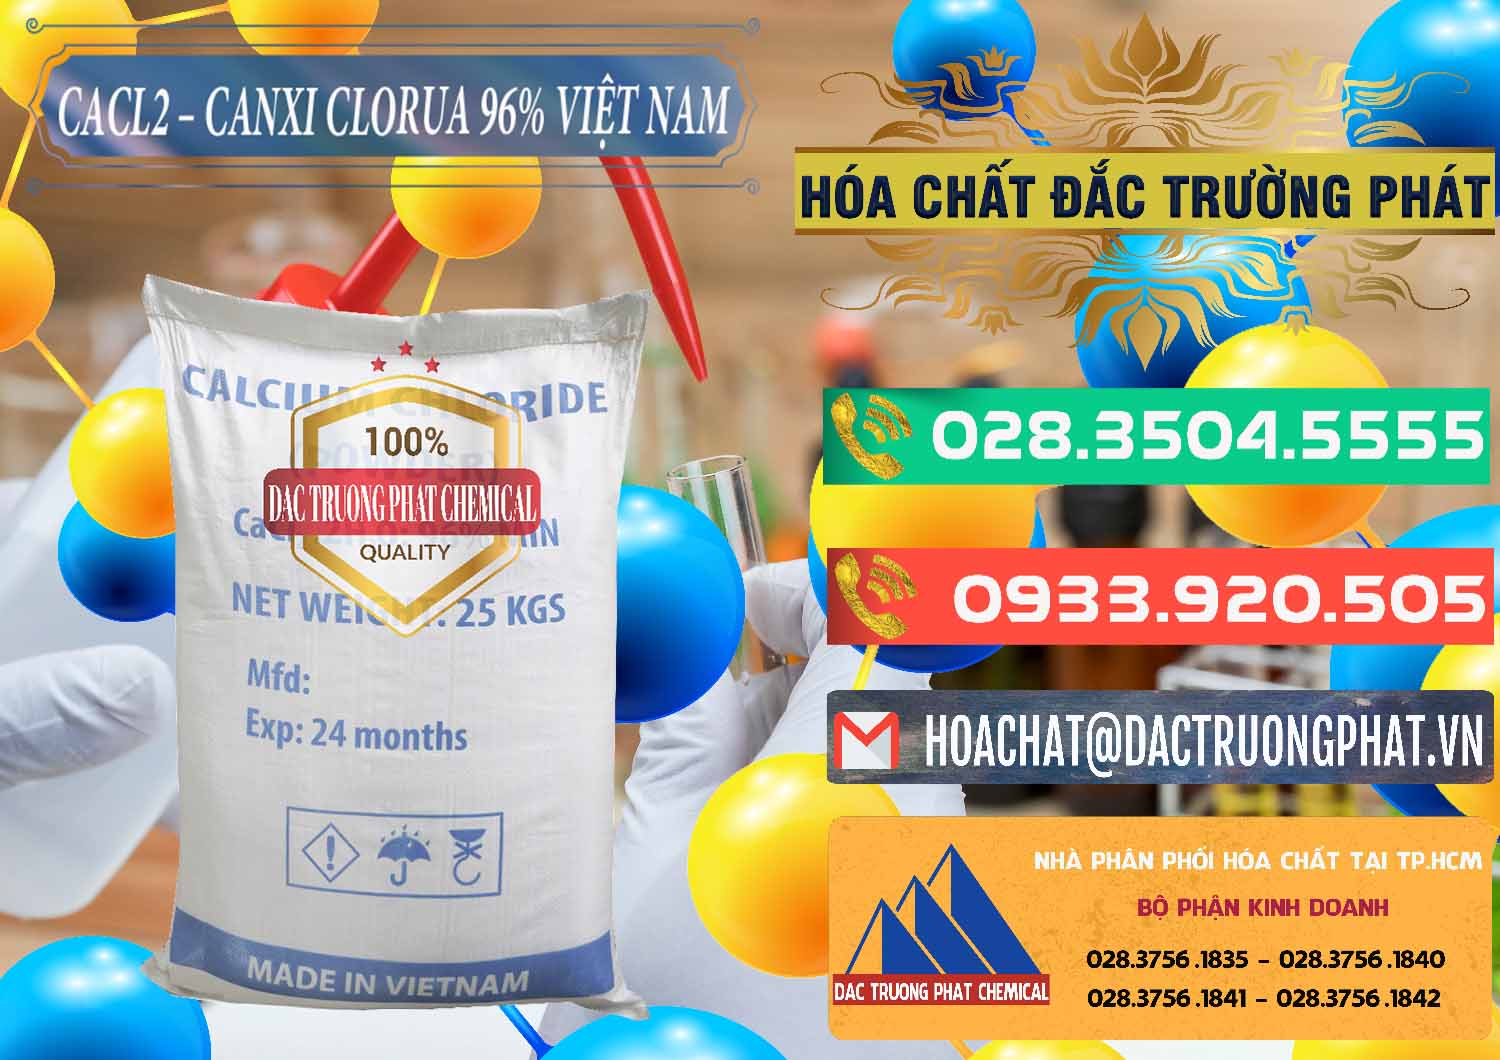 Công ty chuyên bán và cung ứng CaCl2 – Canxi Clorua 96% Việt Nam - 0236 - Phân phối ( kinh doanh ) hóa chất tại TP.HCM - congtyhoachat.com.vn